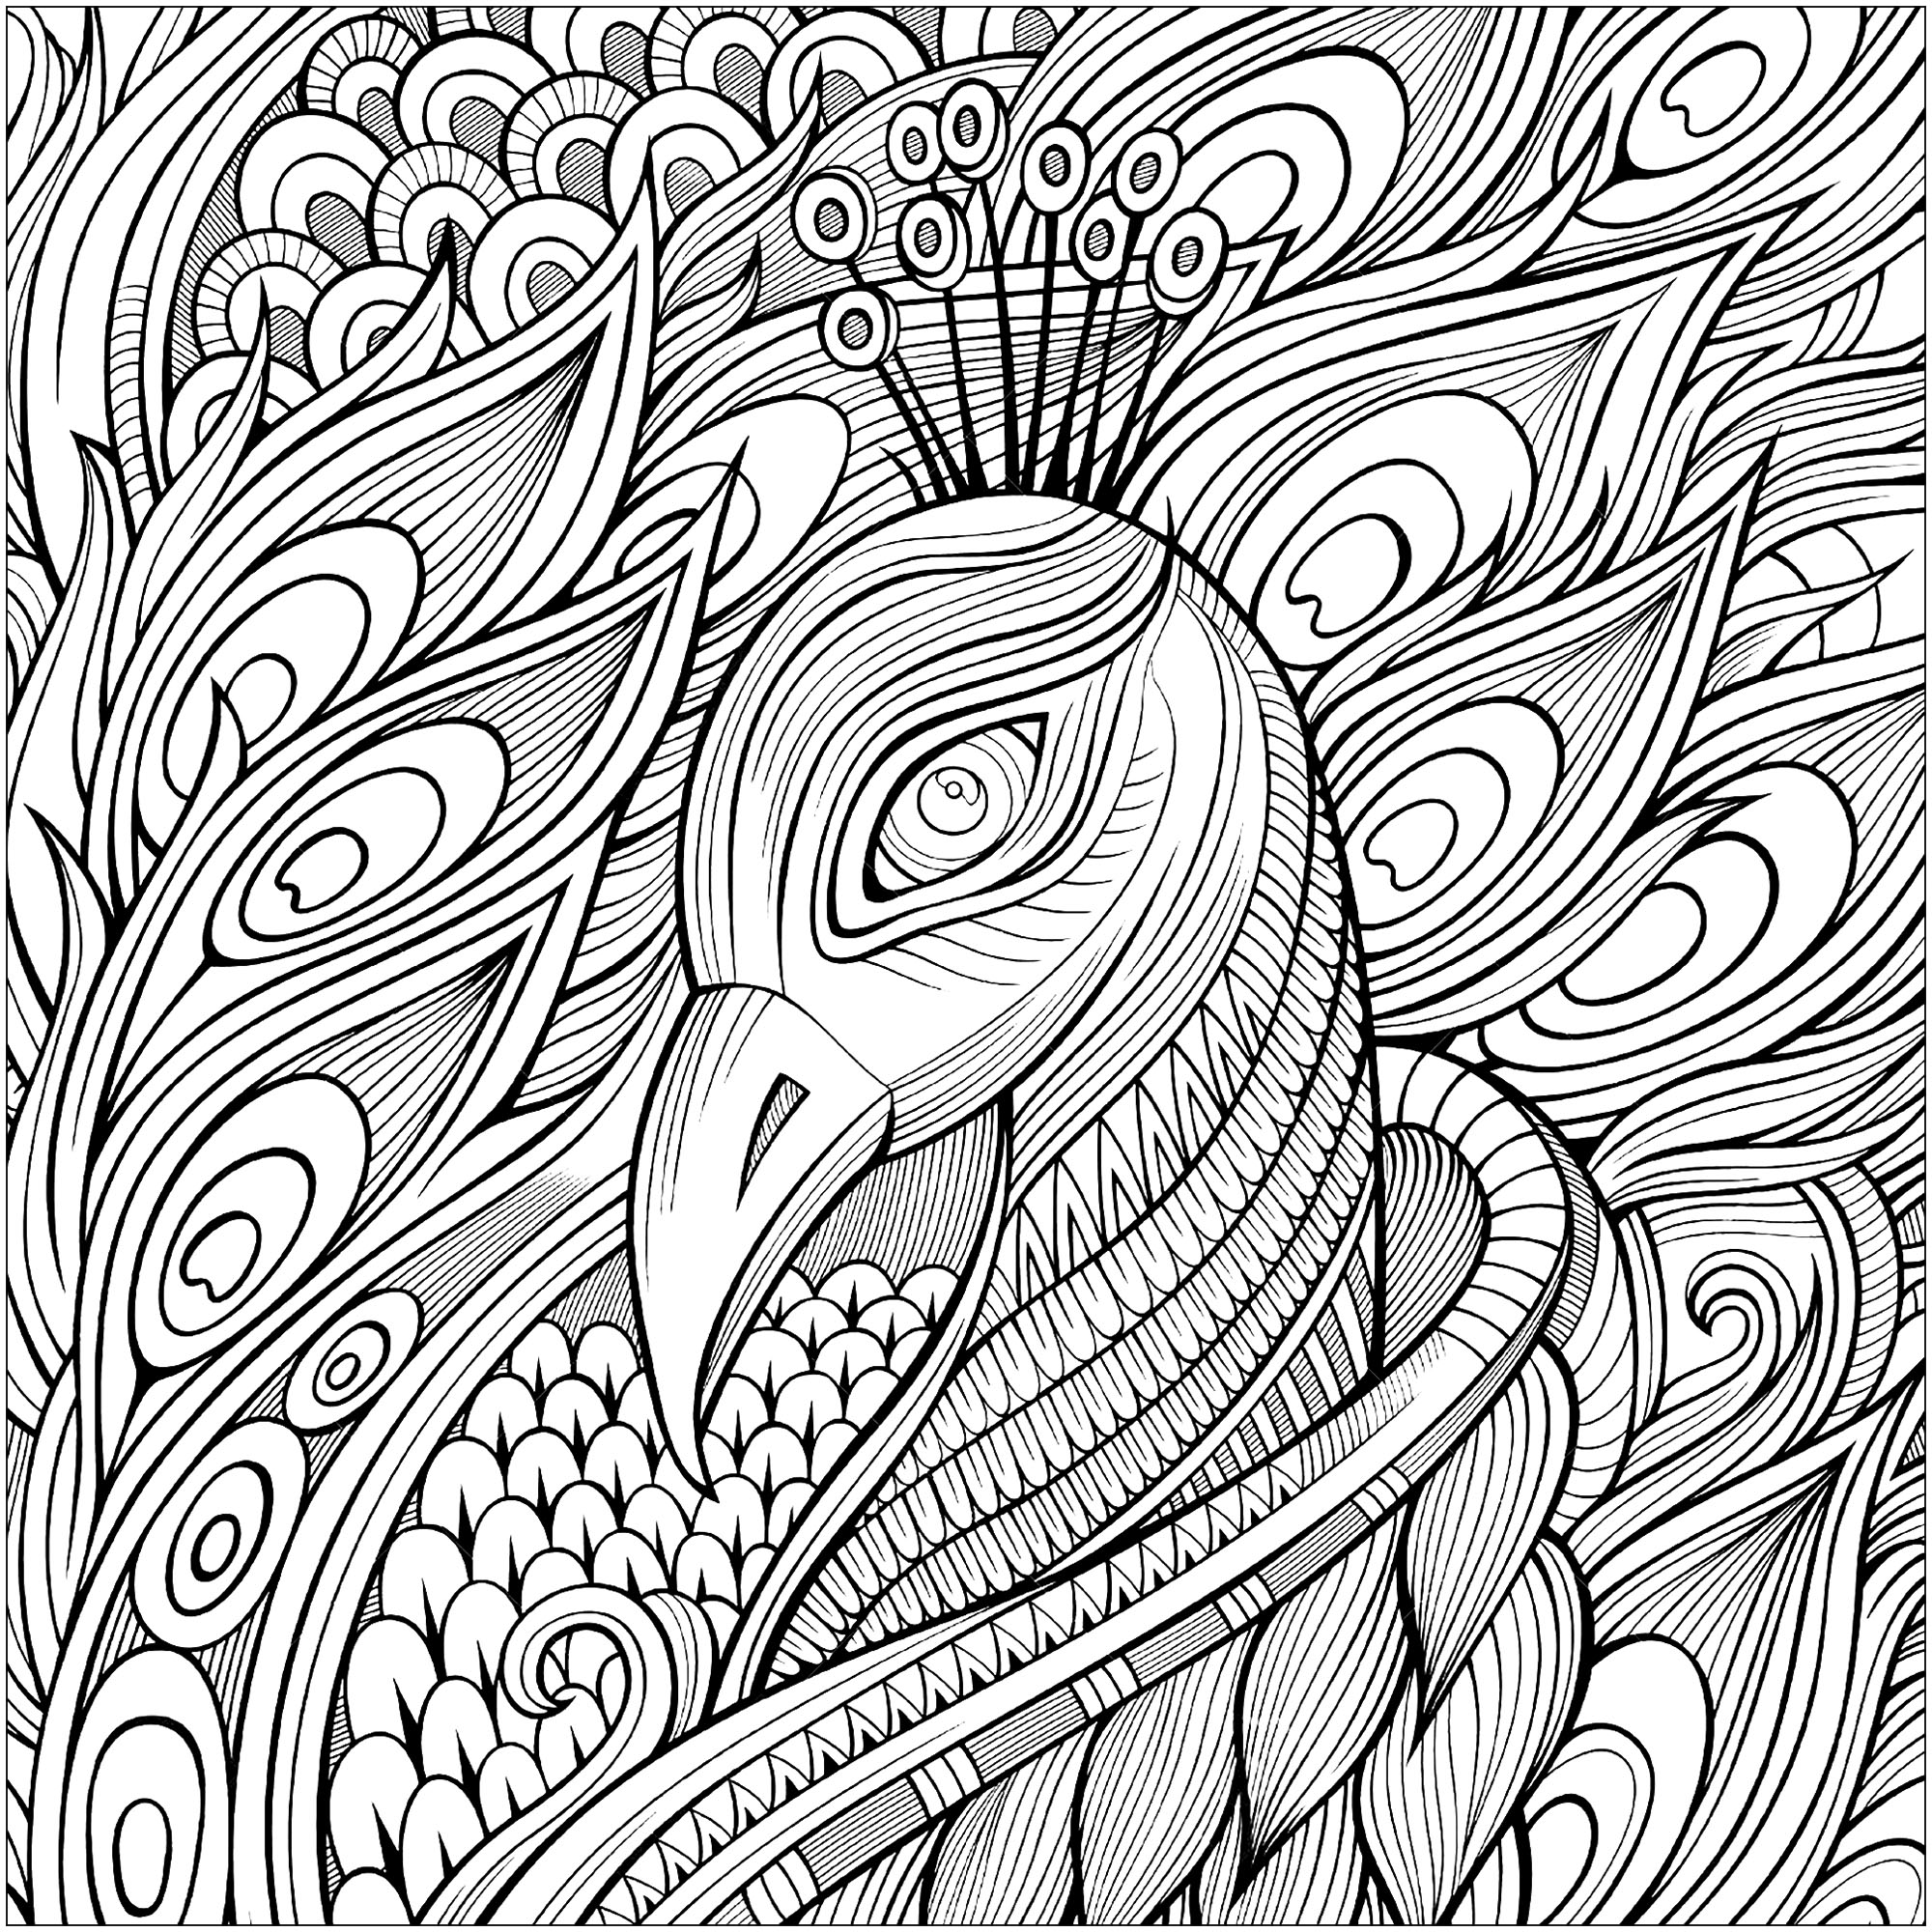 Pagina da colorare che rappresenta la testa di pavone e le sue magnifiche piume, Fonte : 123rf   Artista : Olga Kostenko